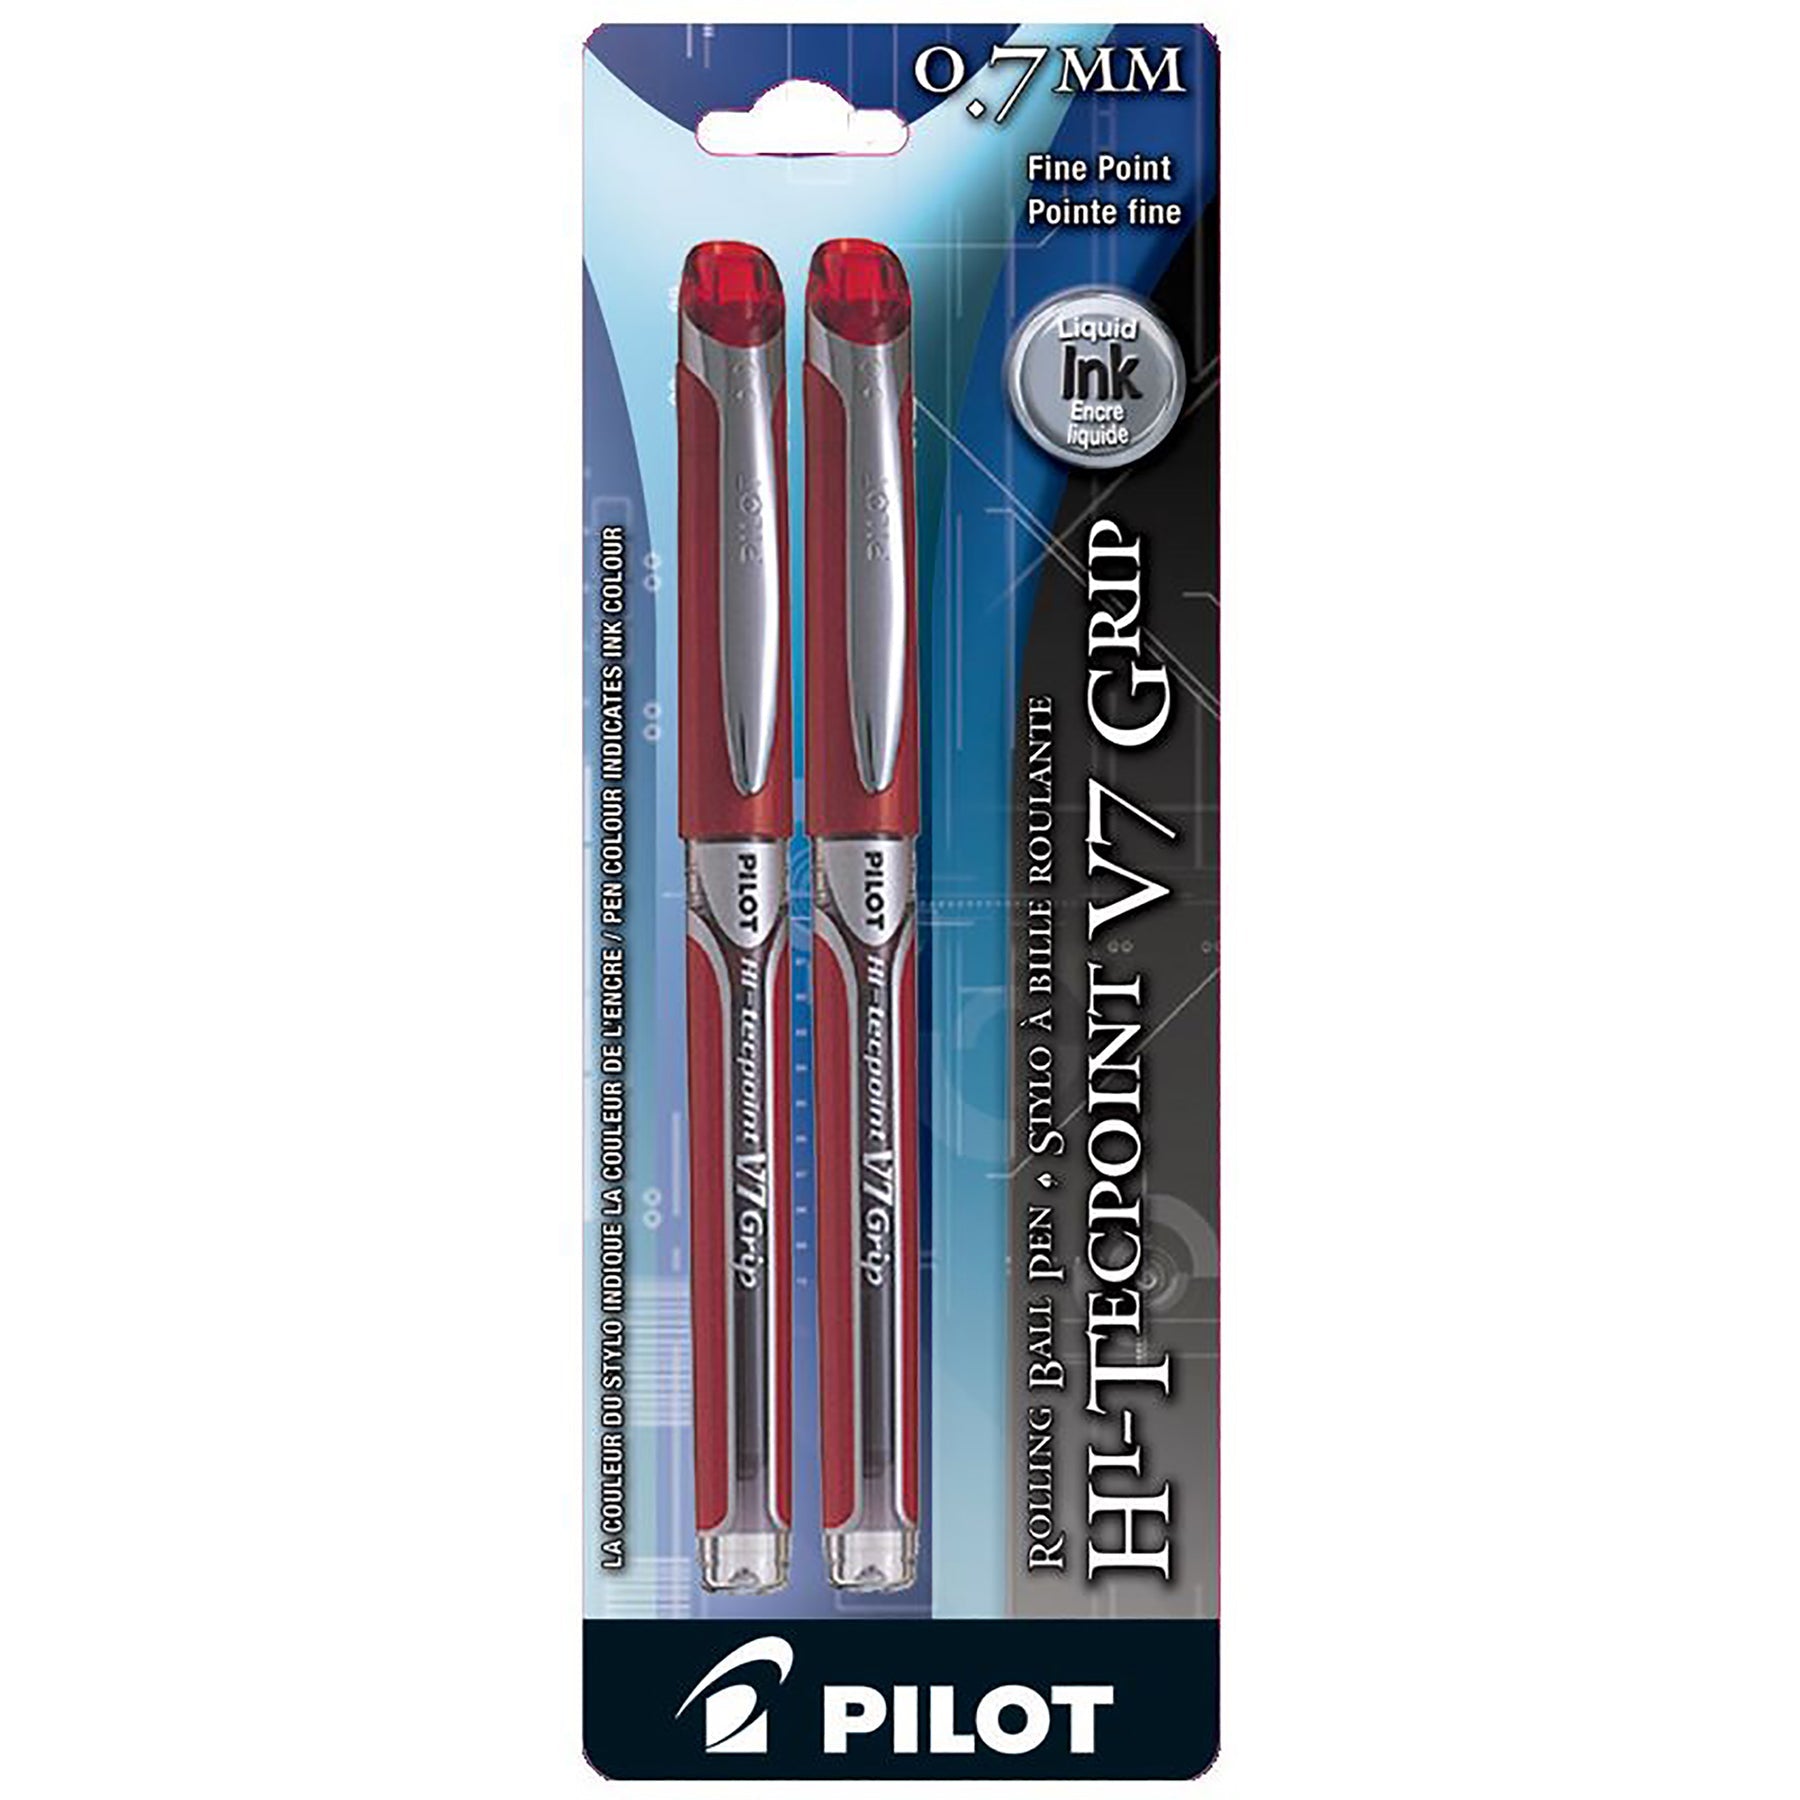 Pilot Hi-Tecpoint Grip 2 Pens - Red Liquid Ink 0.7mm